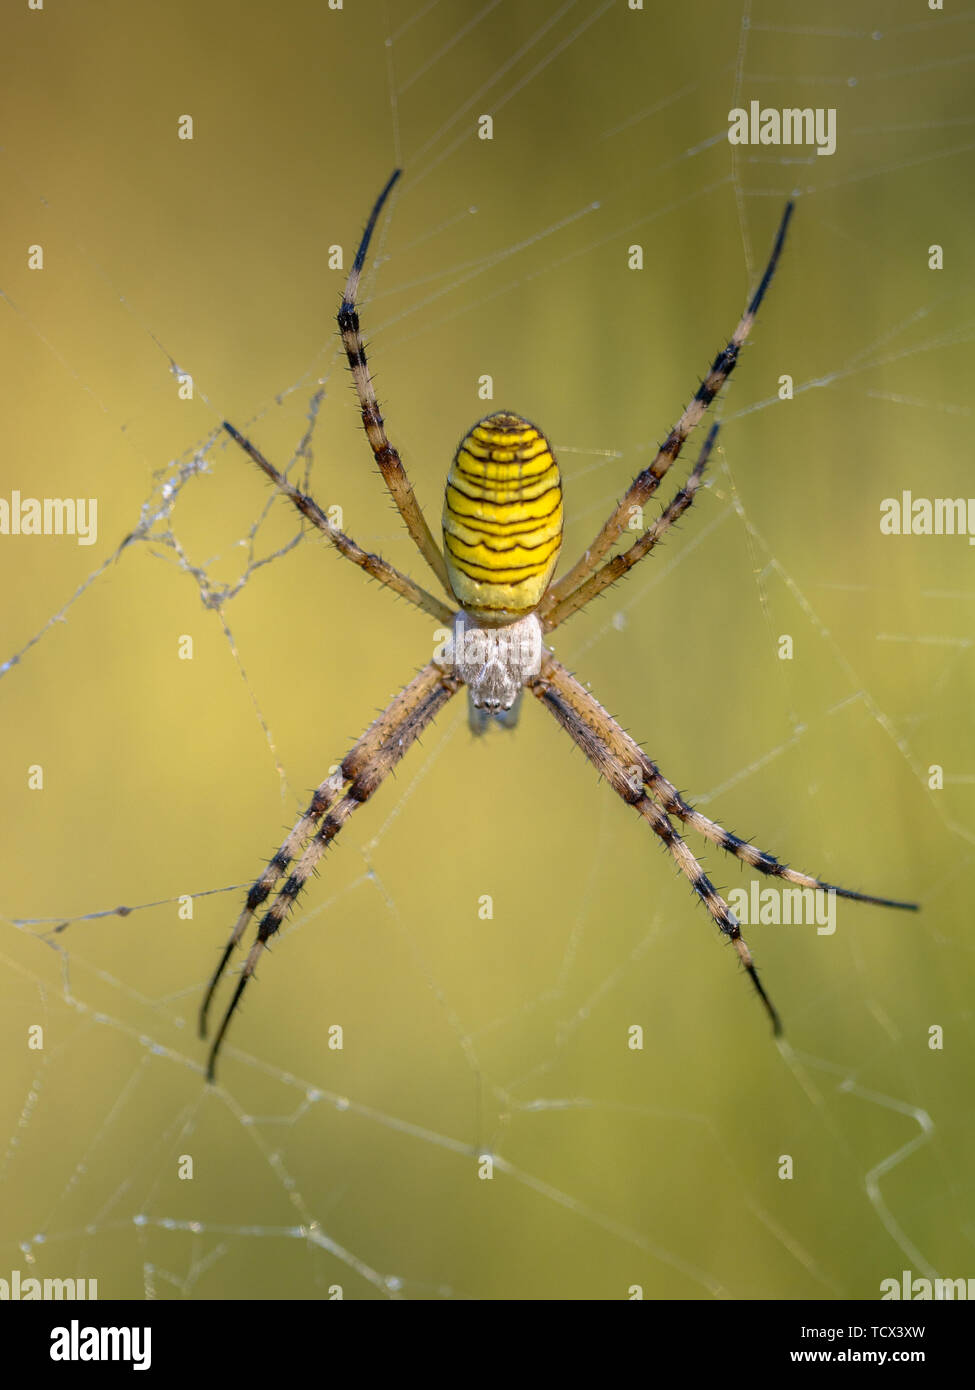 Wasp spider (Argiope bruennichi) in attesa di preda nel web. Close up Foto Stock